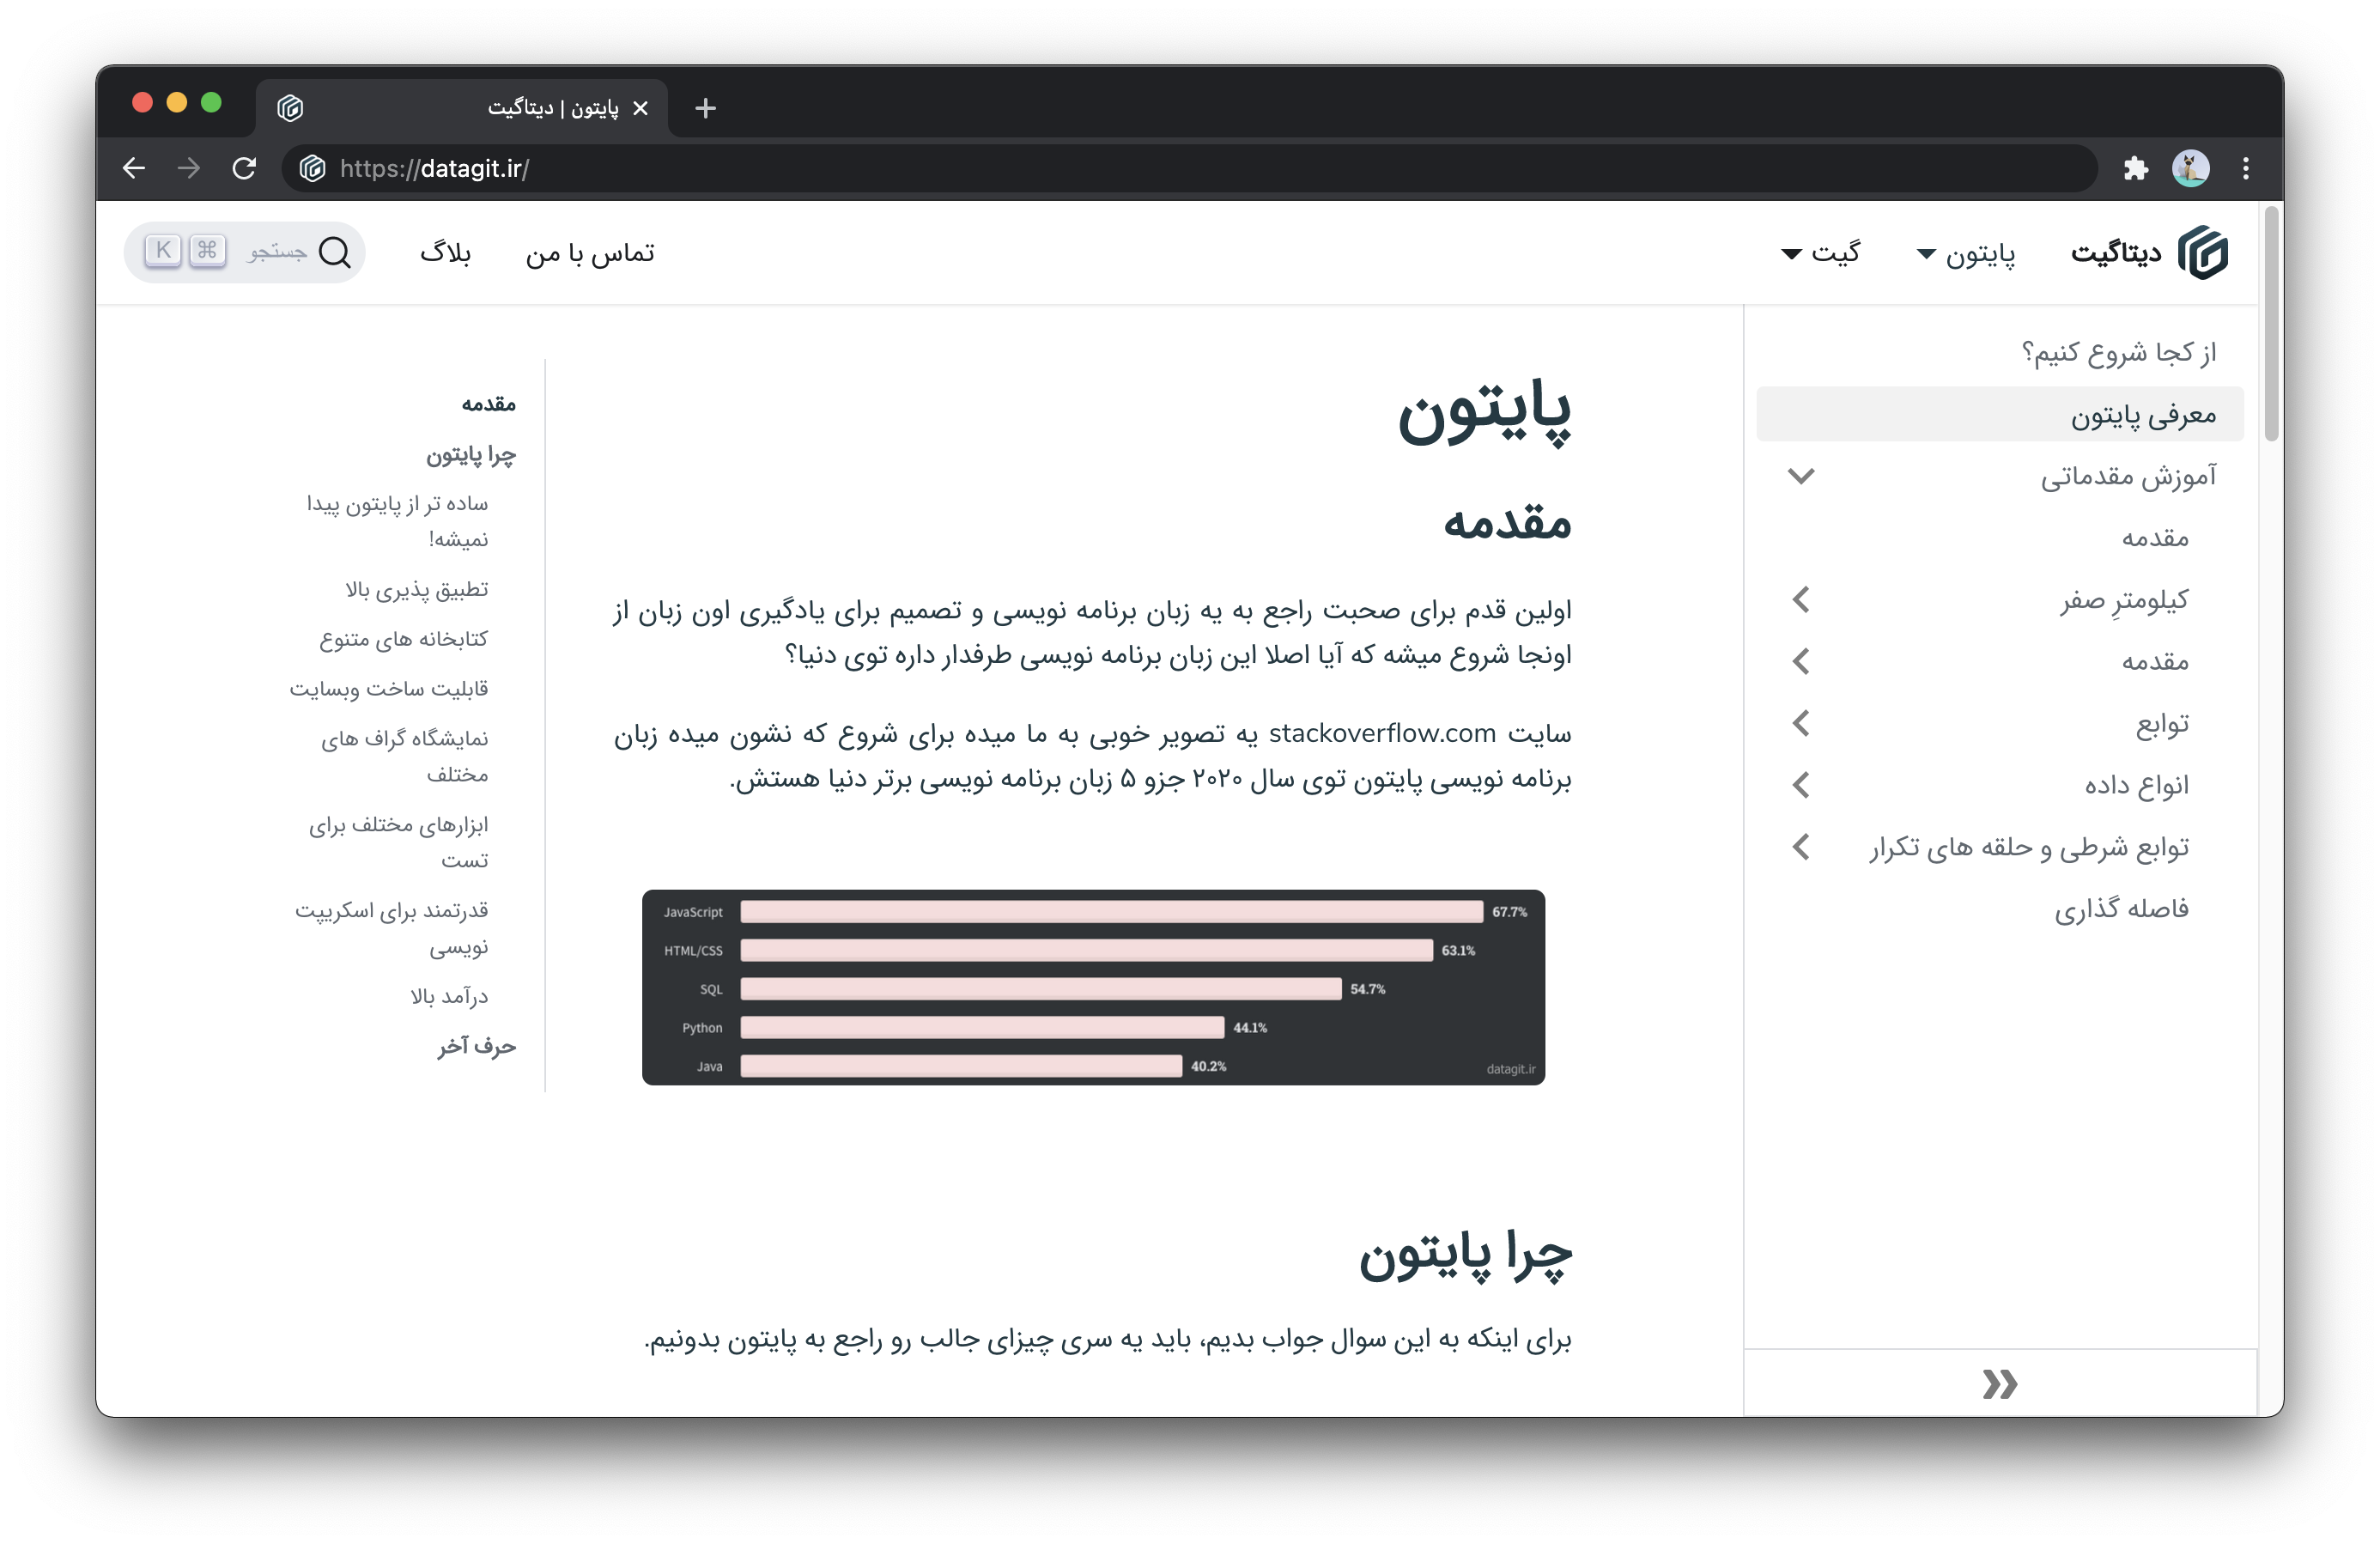 RTL 언어인 페르시아어로 작성된 Datagit의 웹사이트 사이드바는 창의 오른쪽에 표시되고 목차는 왼쪽에 나타납니다.